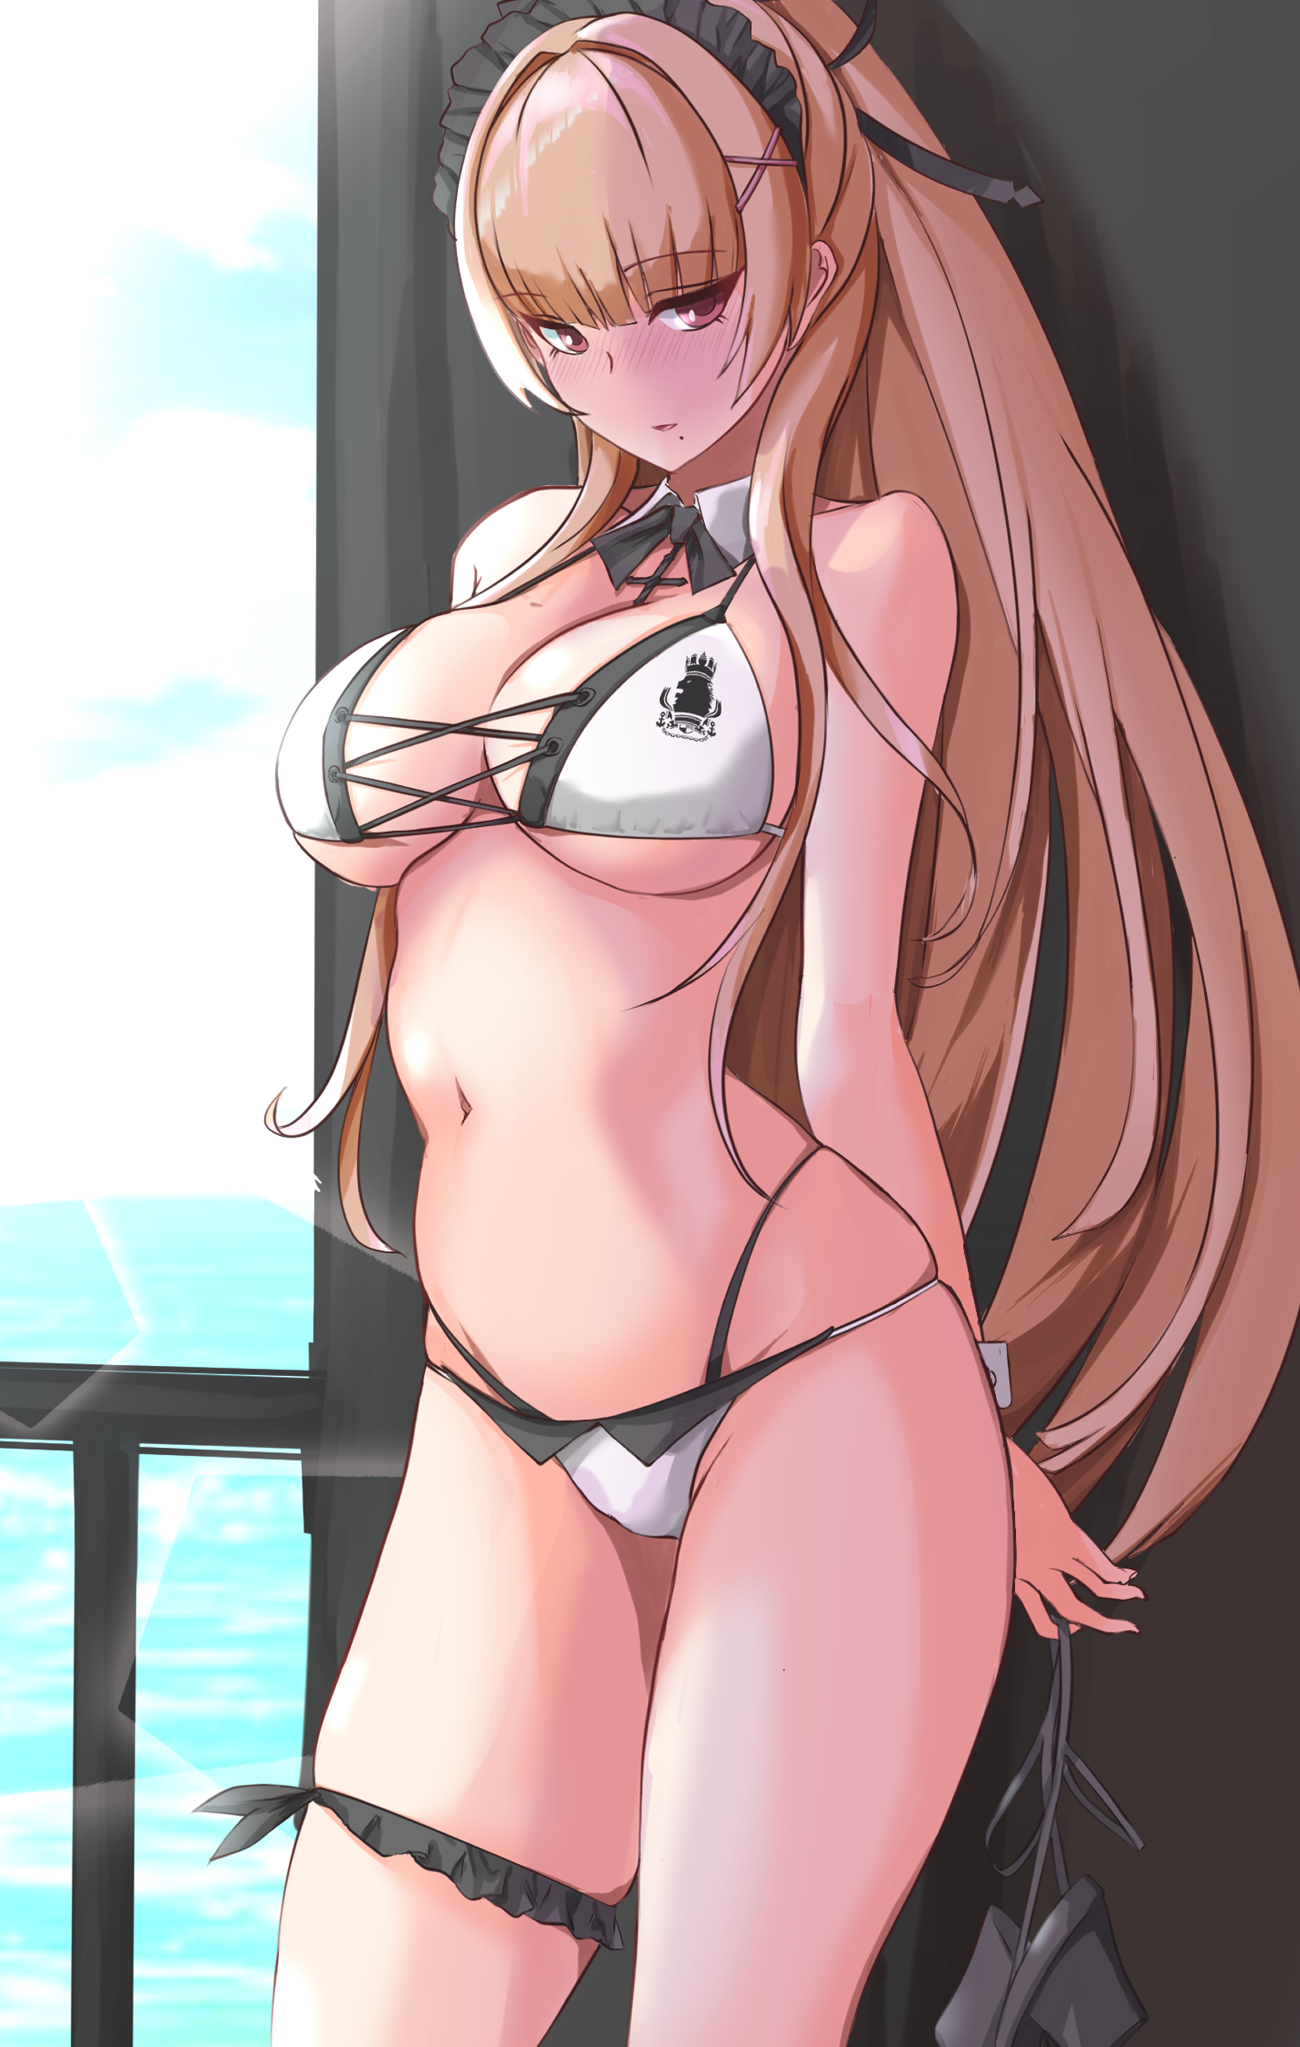 Anime 1300x2047 Azur Lane Swiftsure (Azur Lane) anime girls blonde long hair blushing maid outfit bikini big boobs Pitd